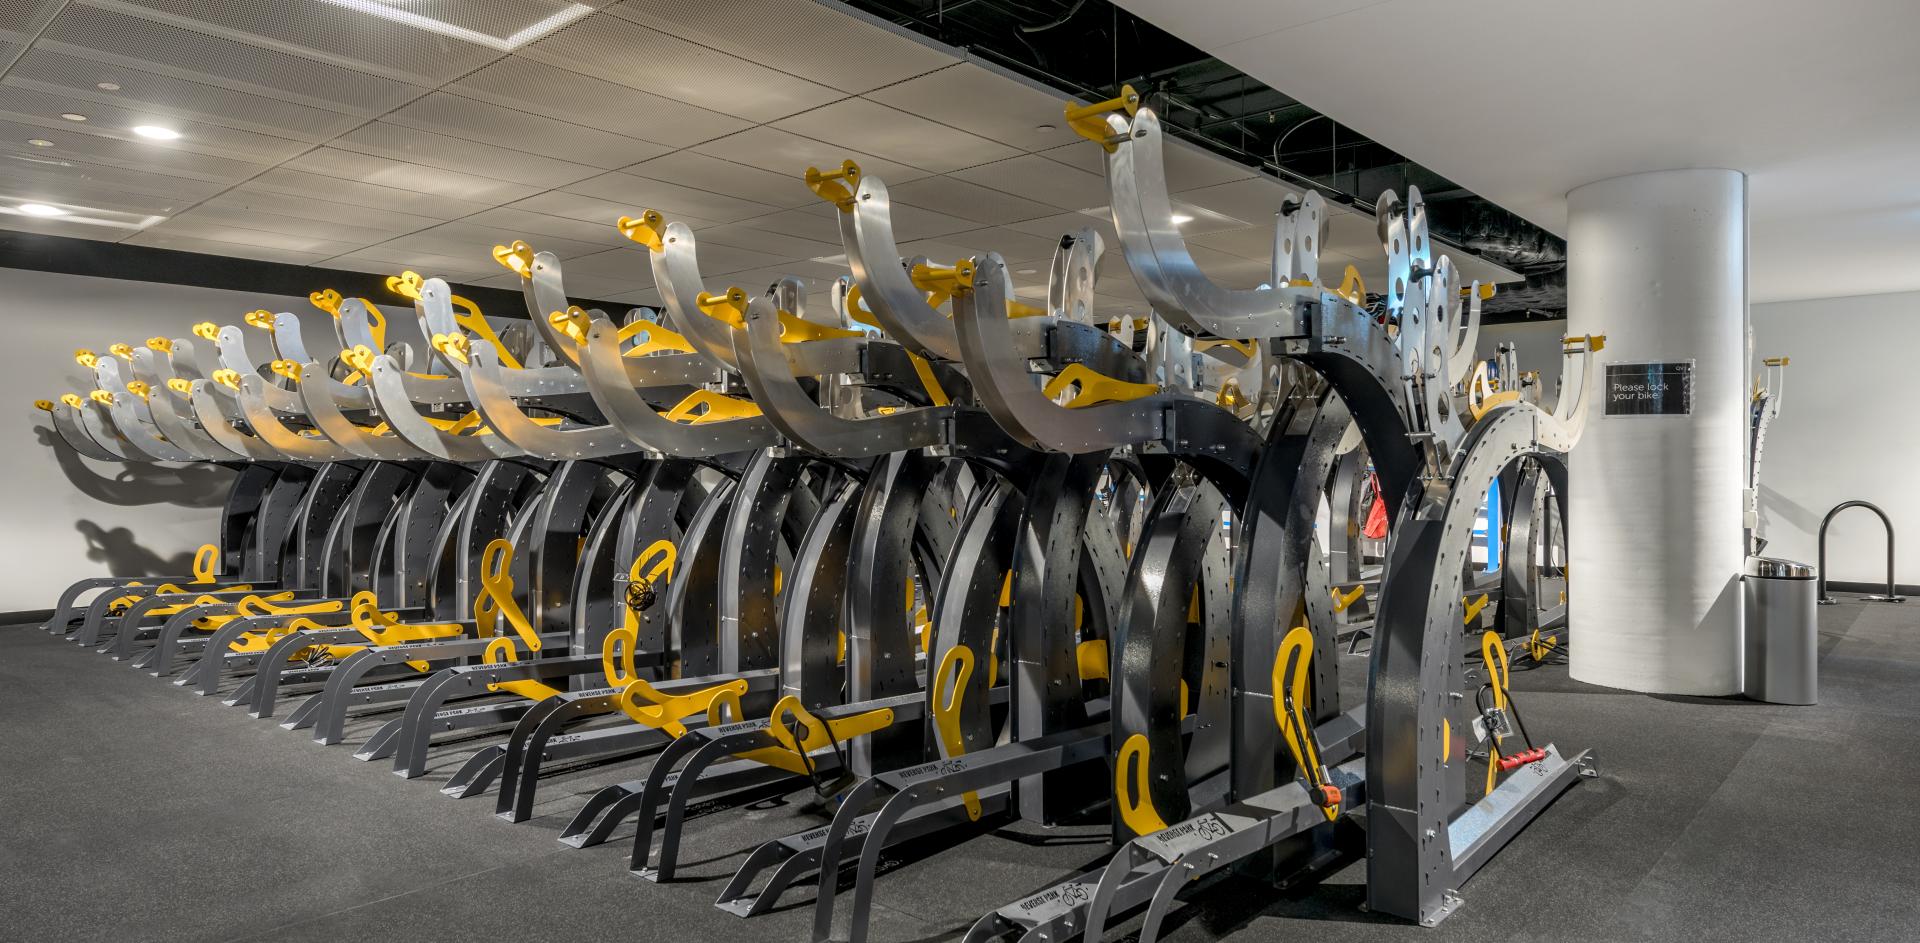 Modern biking machinery in an indoor gym